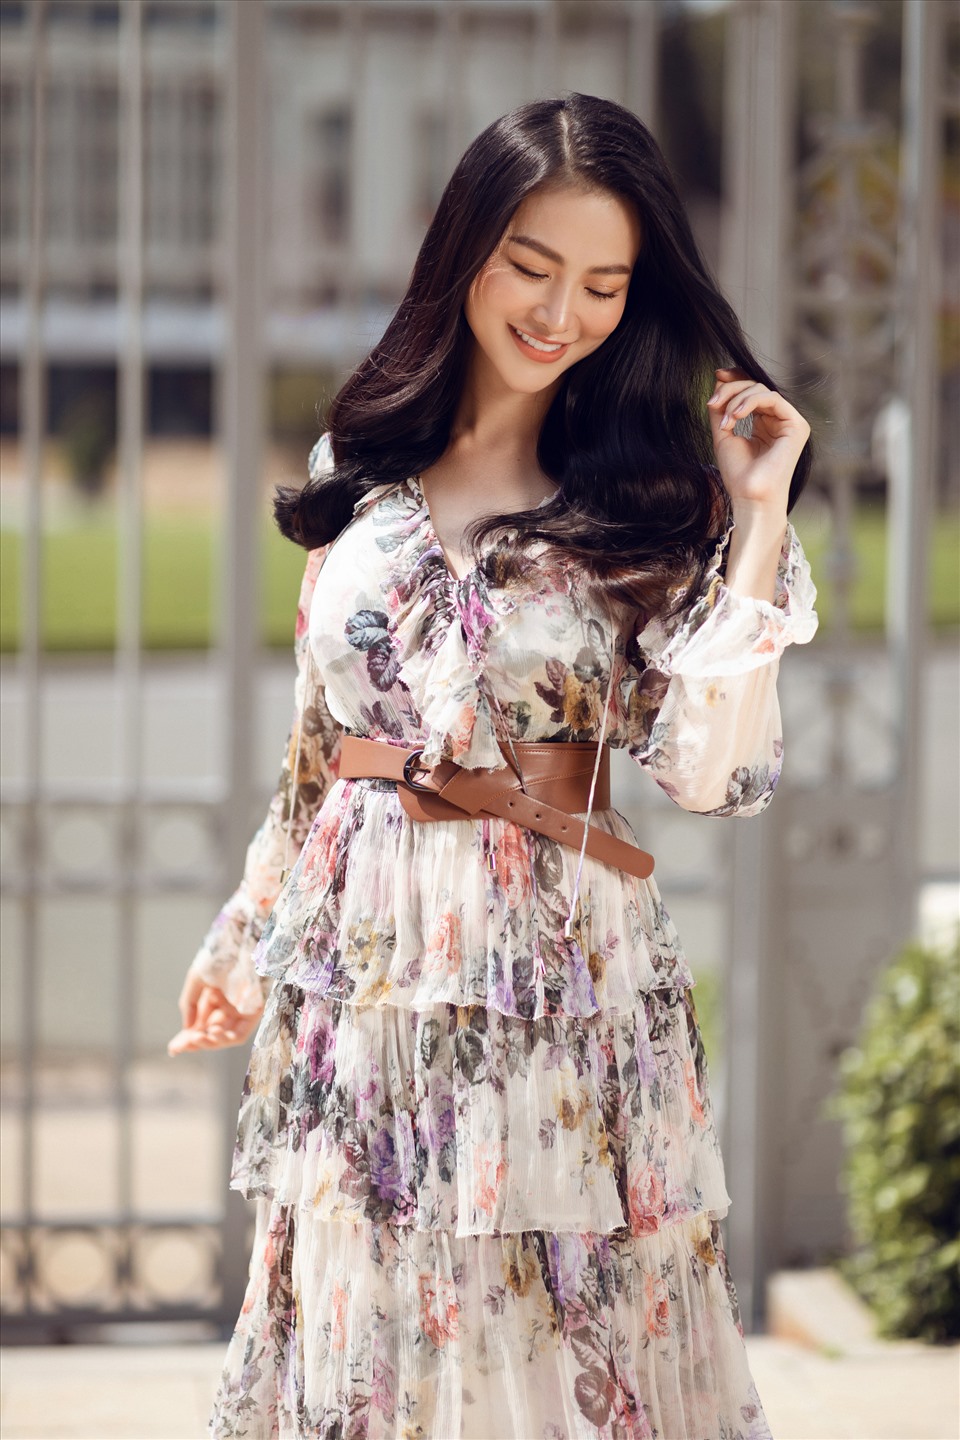 Hoa hậu Phương Khánh là một trong những mỹ nhân đắt giá của showbiz Việt. Cô không ngại “biến hóa” trong mỗi bộ hình. Hiện tại, Phương Khánh đáng là đại diện của nhiều thương hiệu thời trang nổi tiếng.